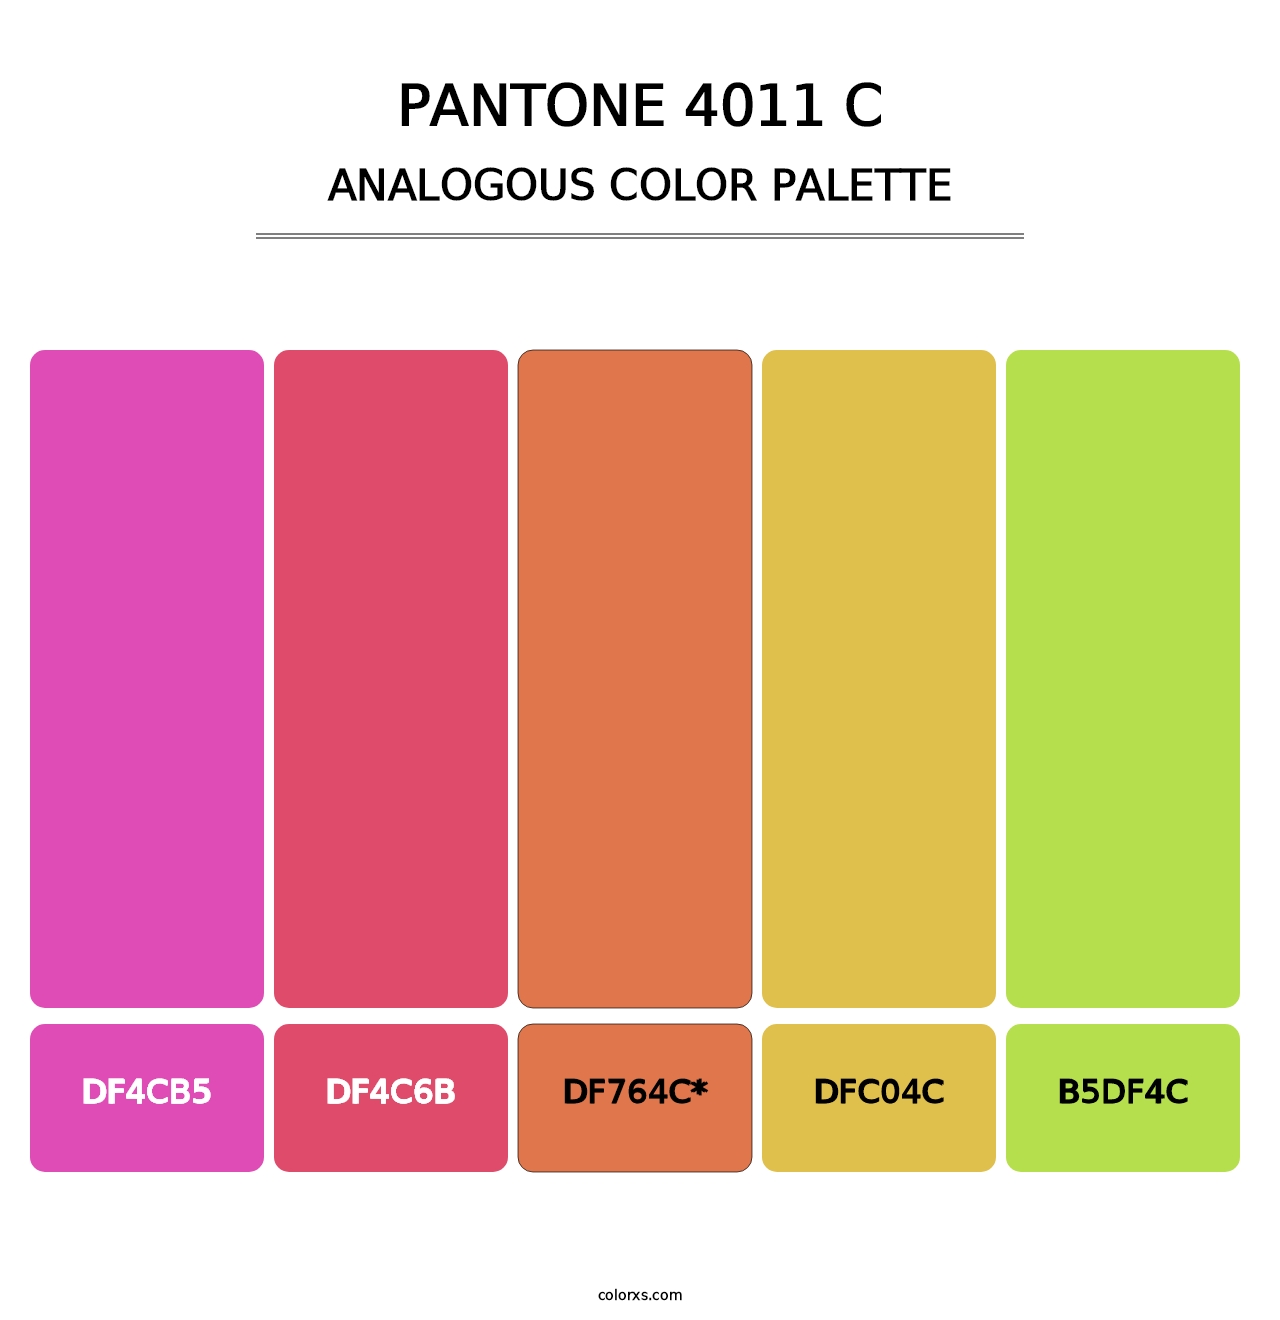 PANTONE 4011 C - Analogous Color Palette